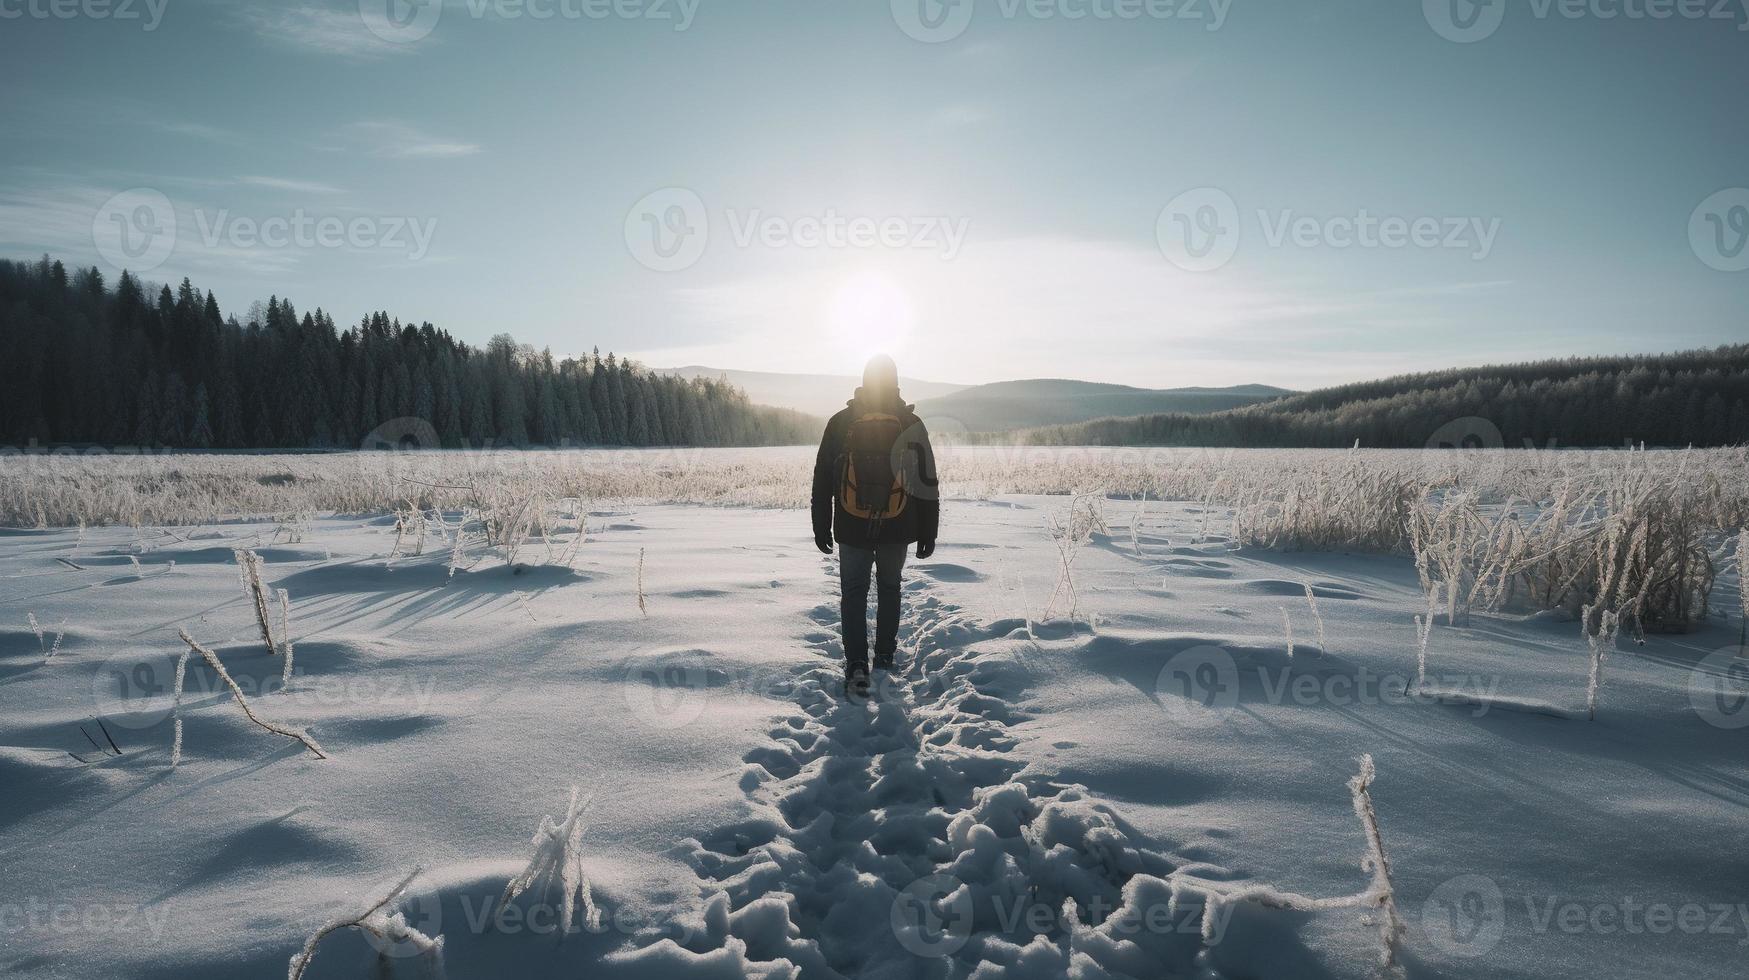 escursionista con zaino a piedi su nevoso pista nel inverno montagne. viaggio e avventura concetto.inverno paesaggio foto